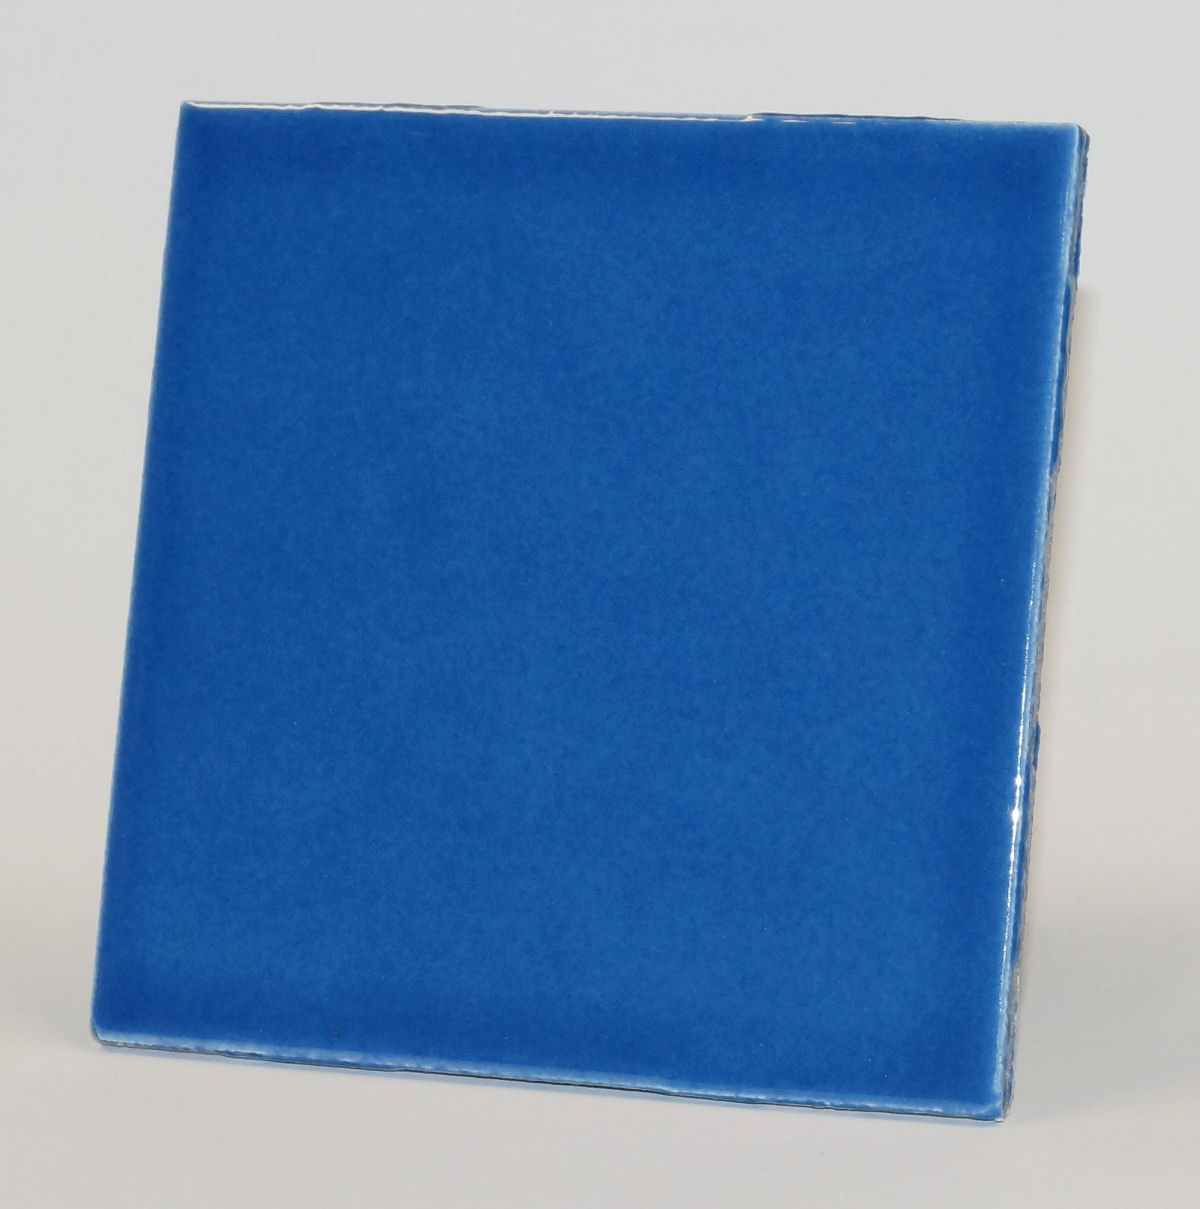 Hellblau Wahl Handgemachte Fliesen Aqua über 34 Stück 10x10 2 mxhl-20-3-2